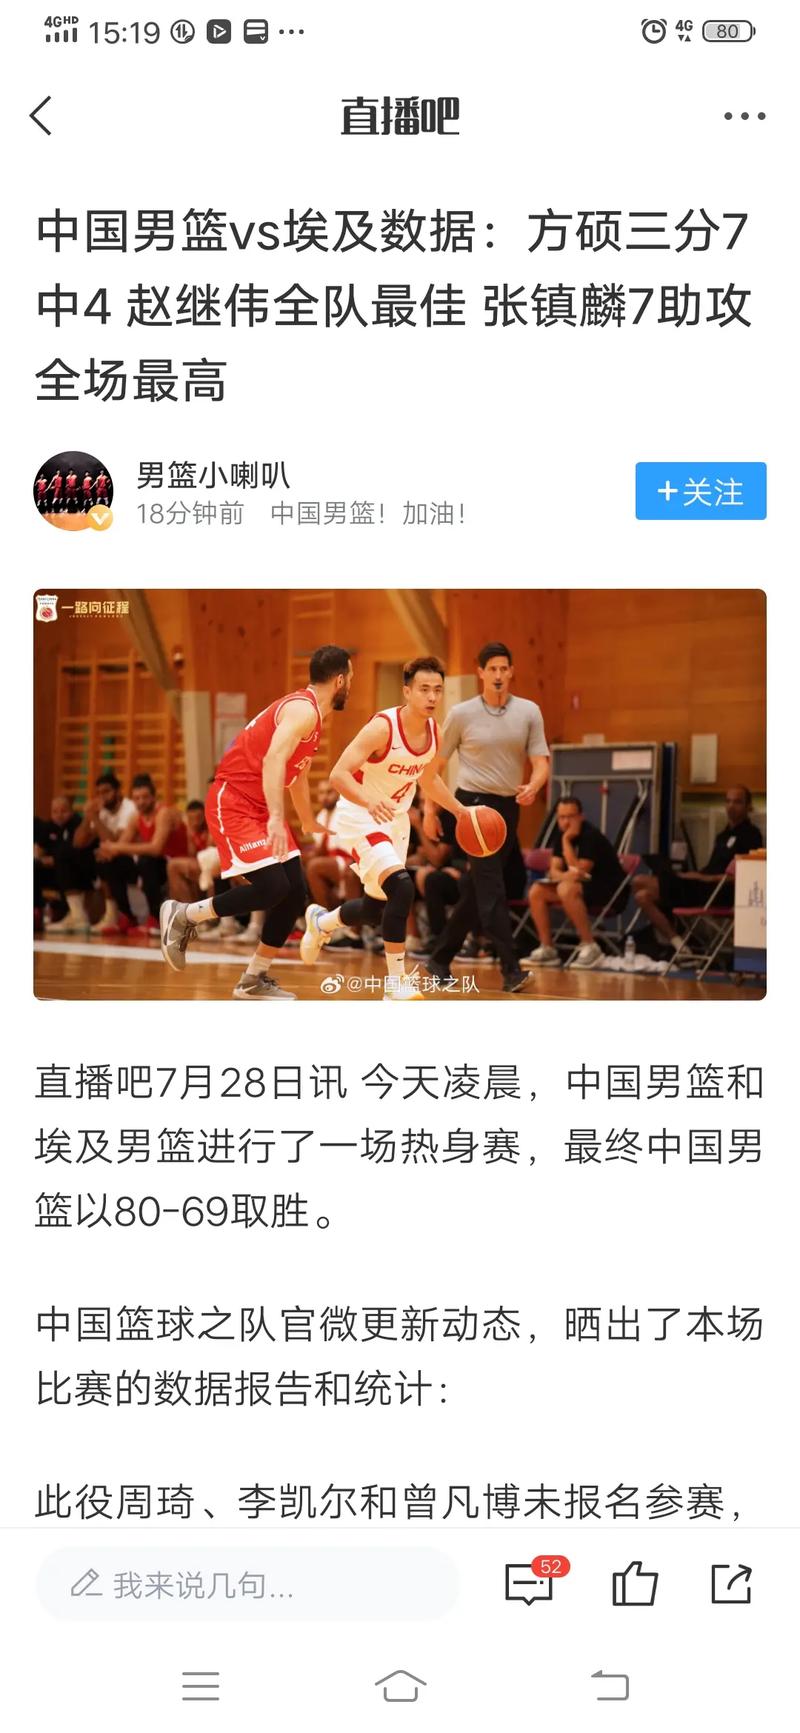 中国男篮对埃及录像回放第一节